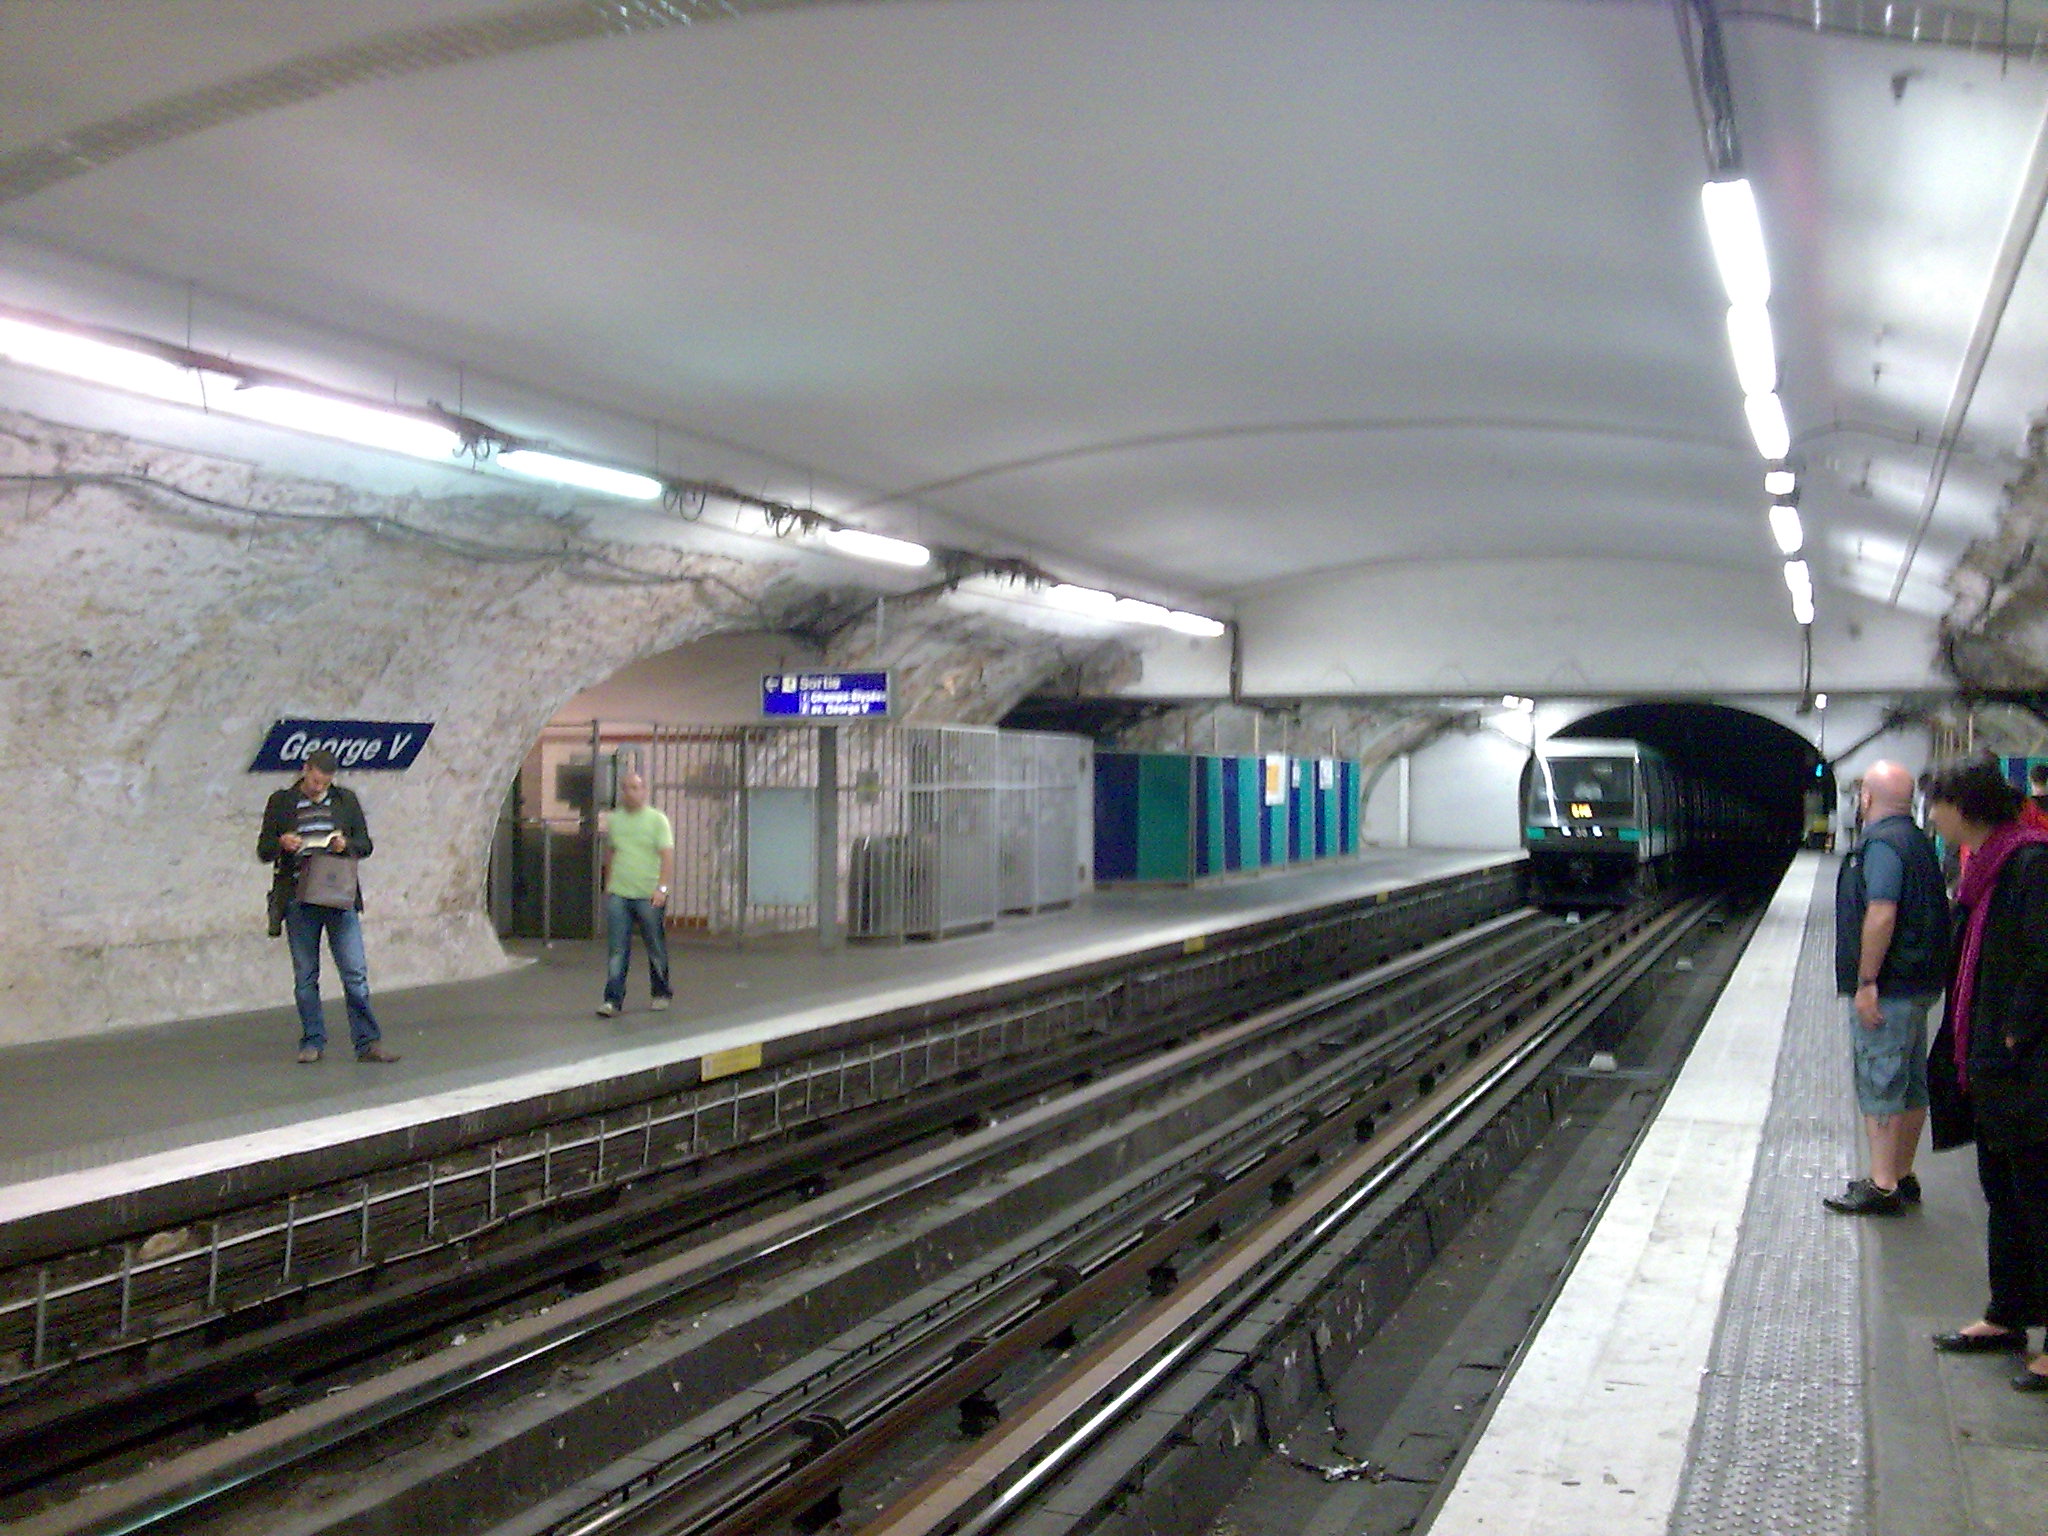 George V (metrostation)